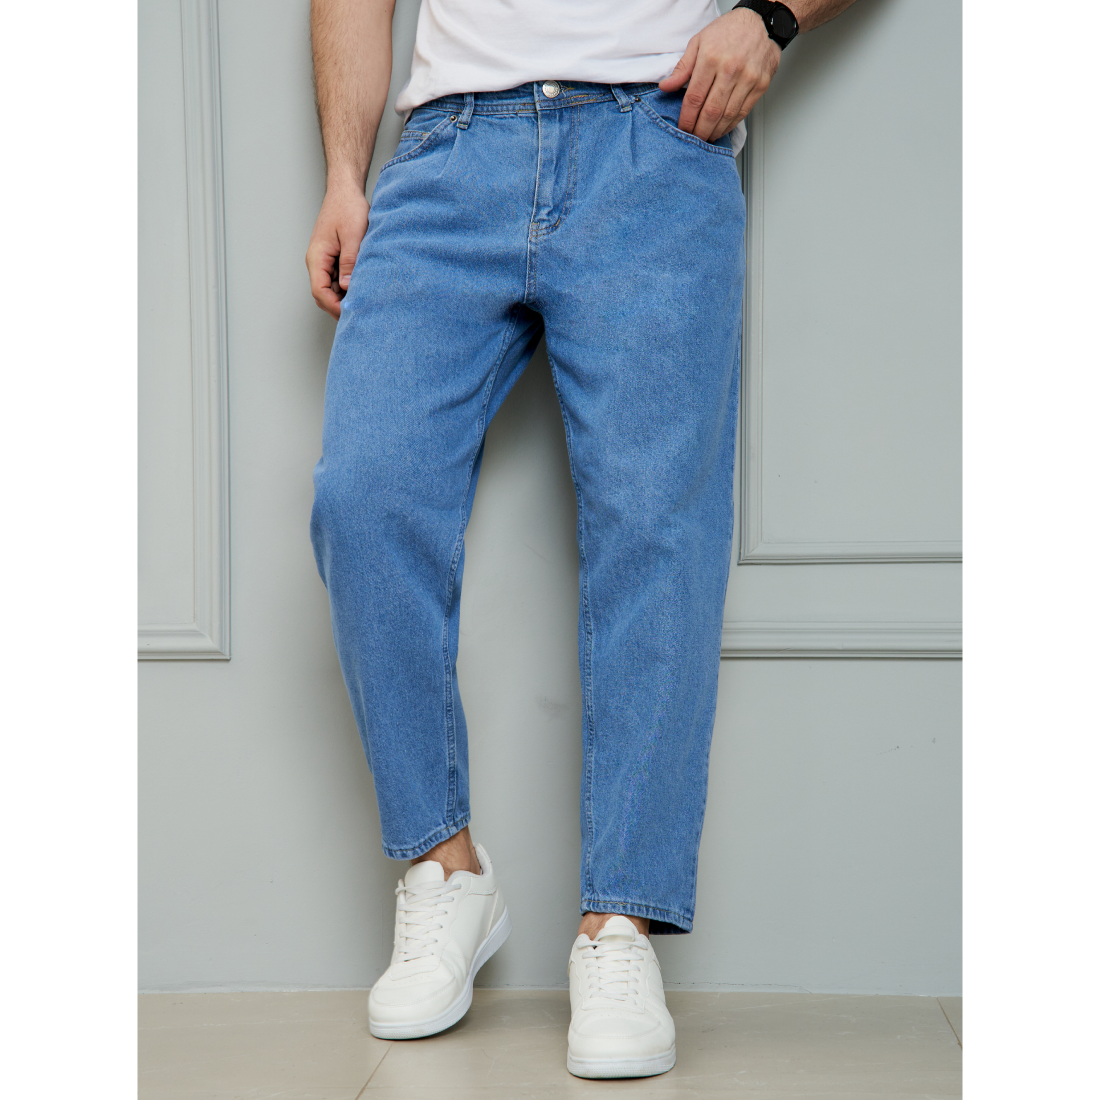 Джинсы мужские Barouz Jeans Tnvl-bnn синие 30